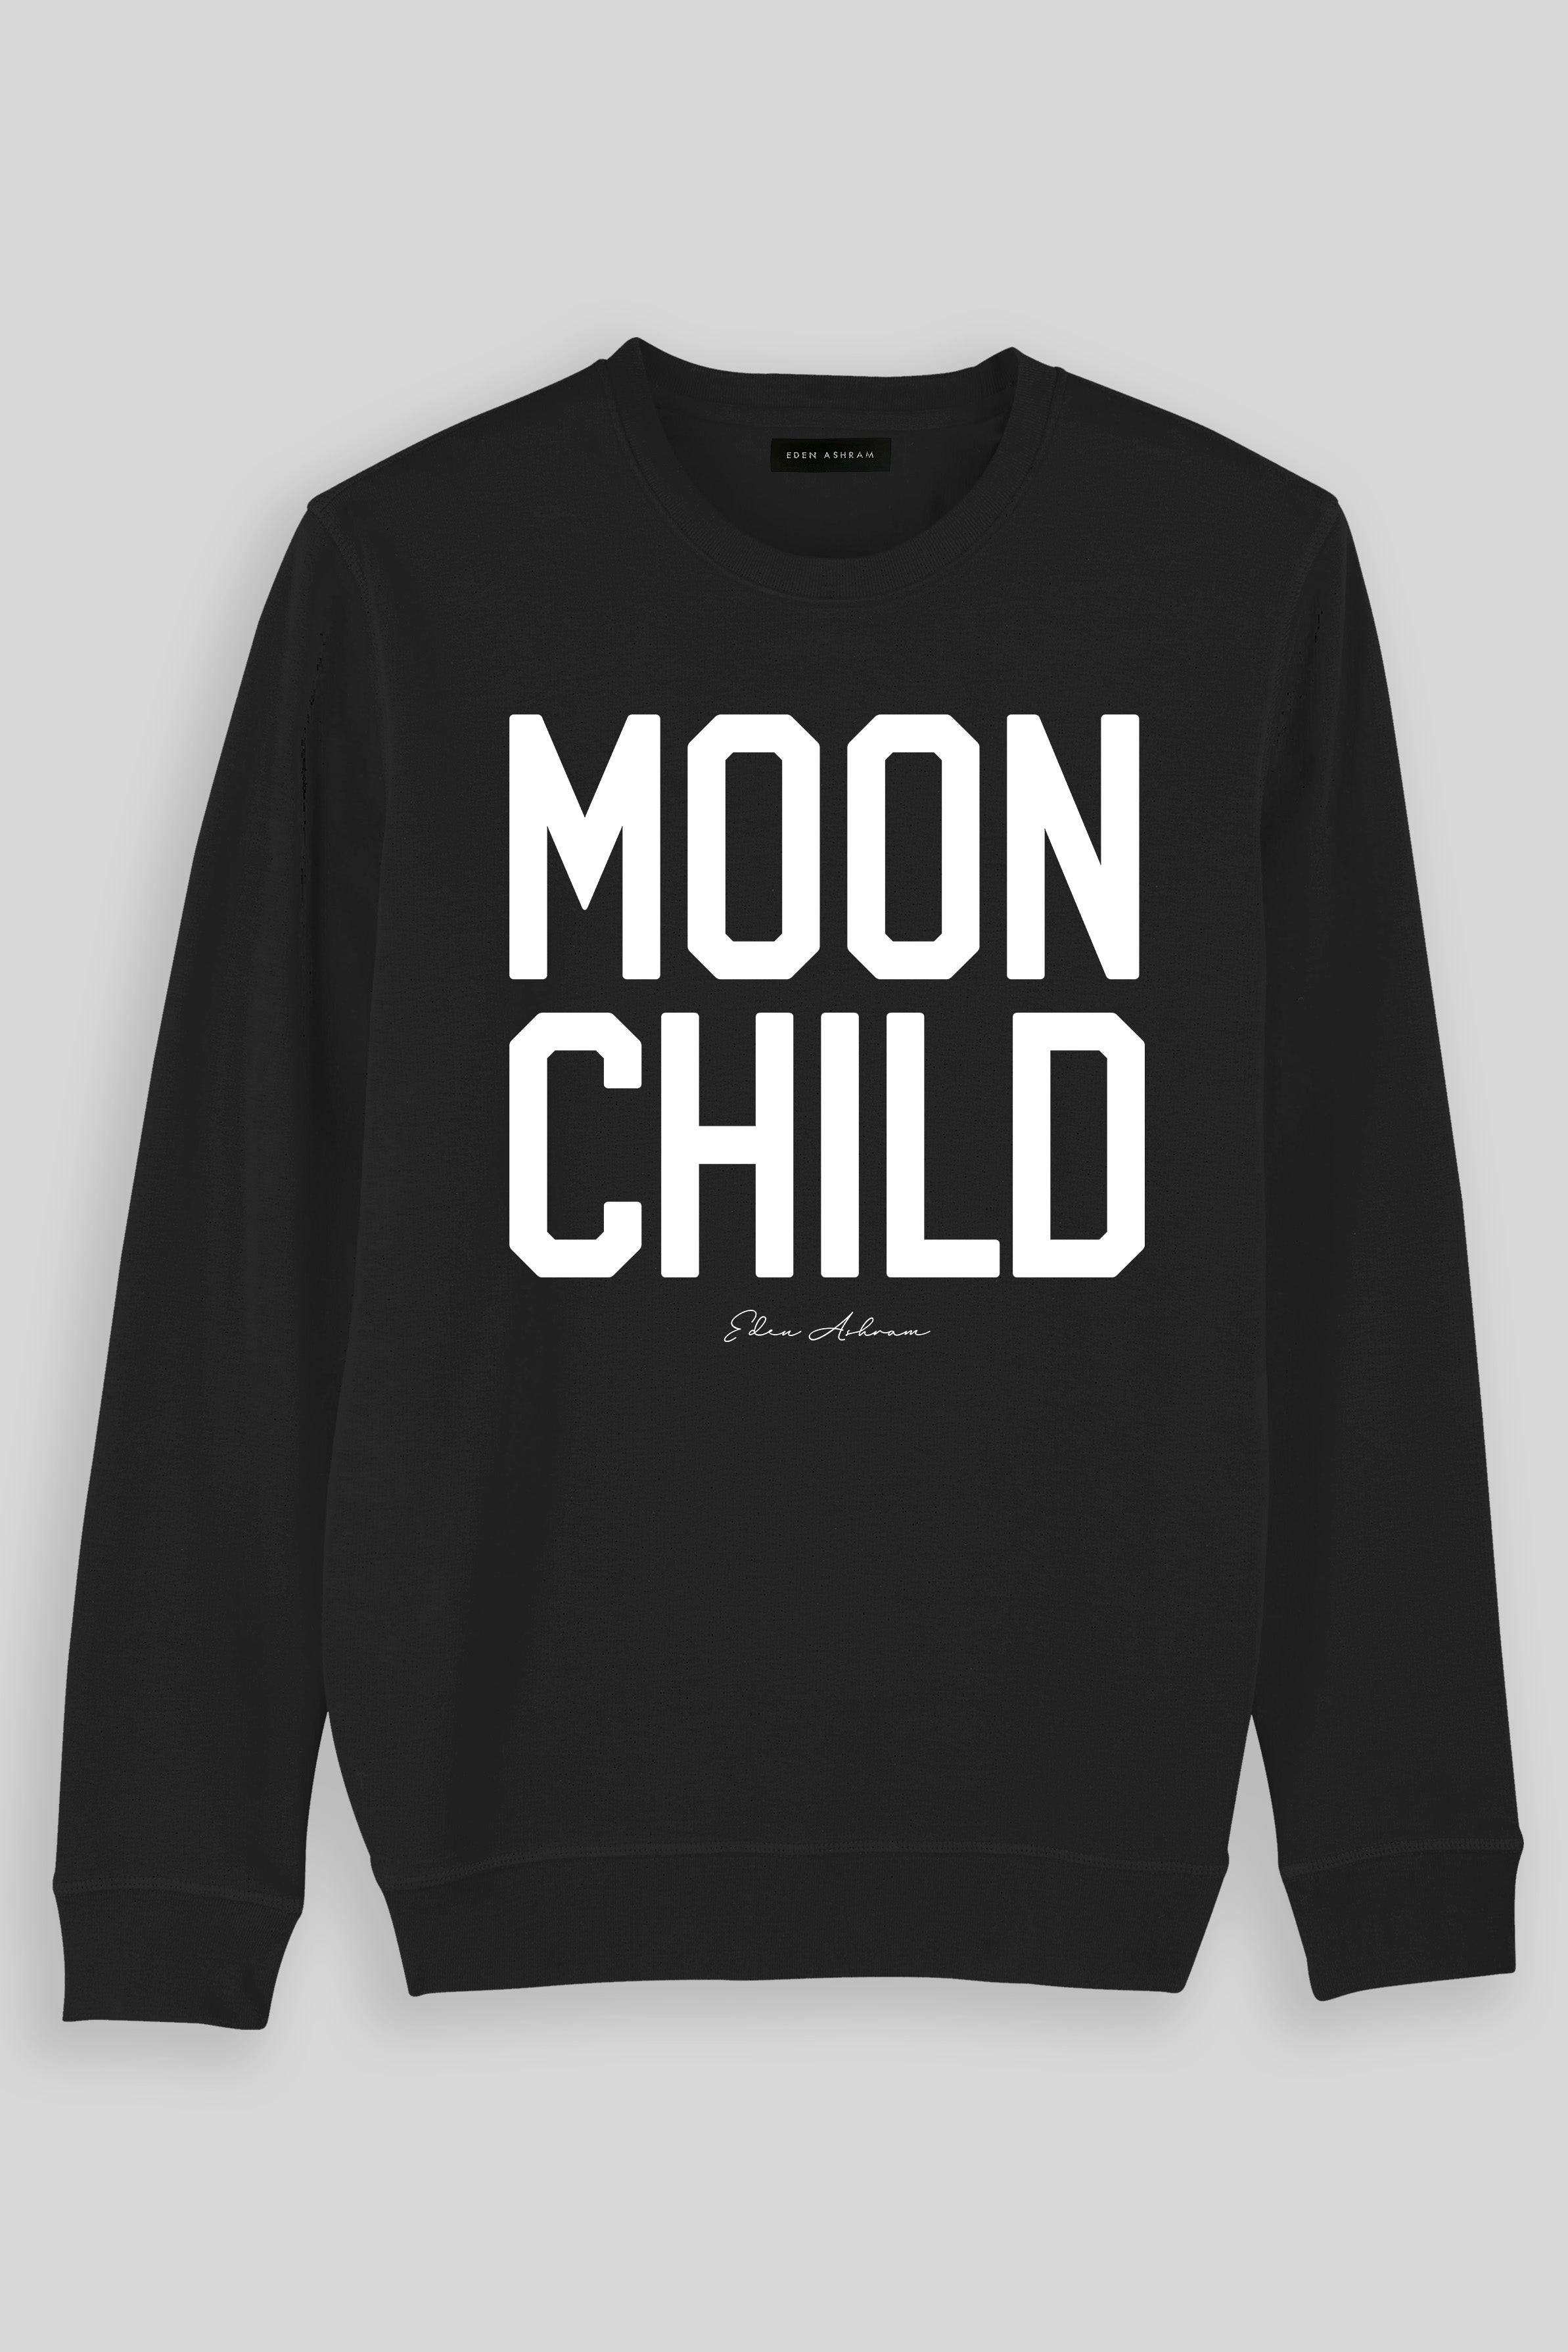 Eden Ashram Moon Child Premium Crew Neck Sweatshirt Vintage Black